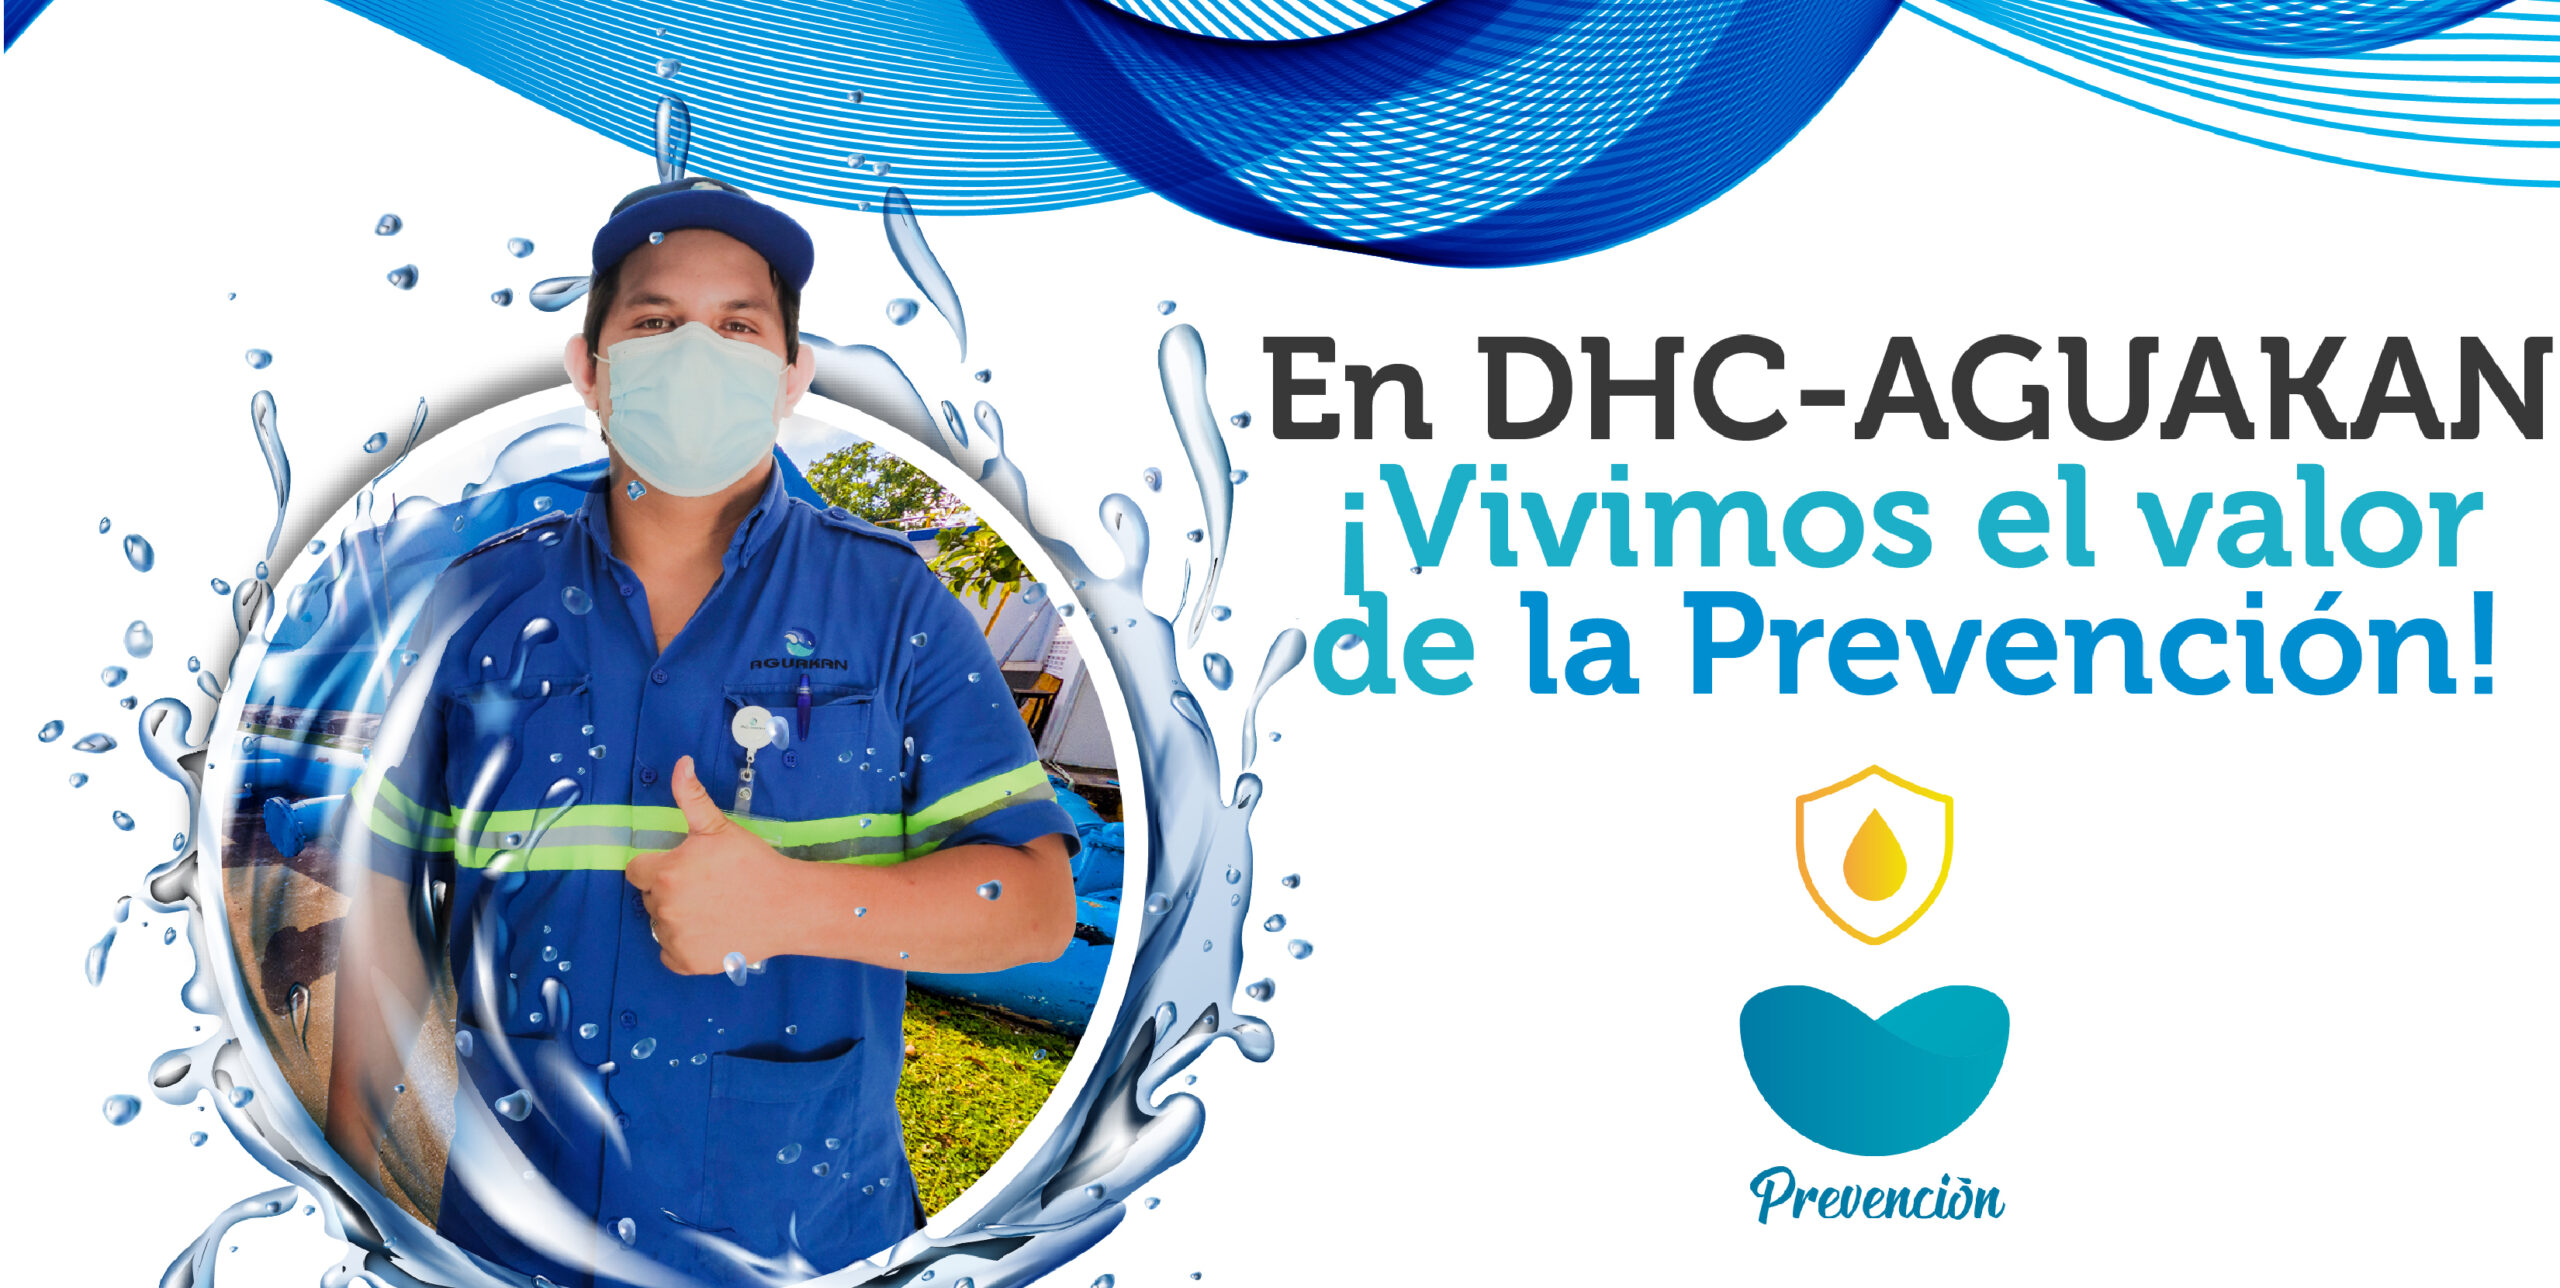 En DHC vivimos el valor de la prevención!